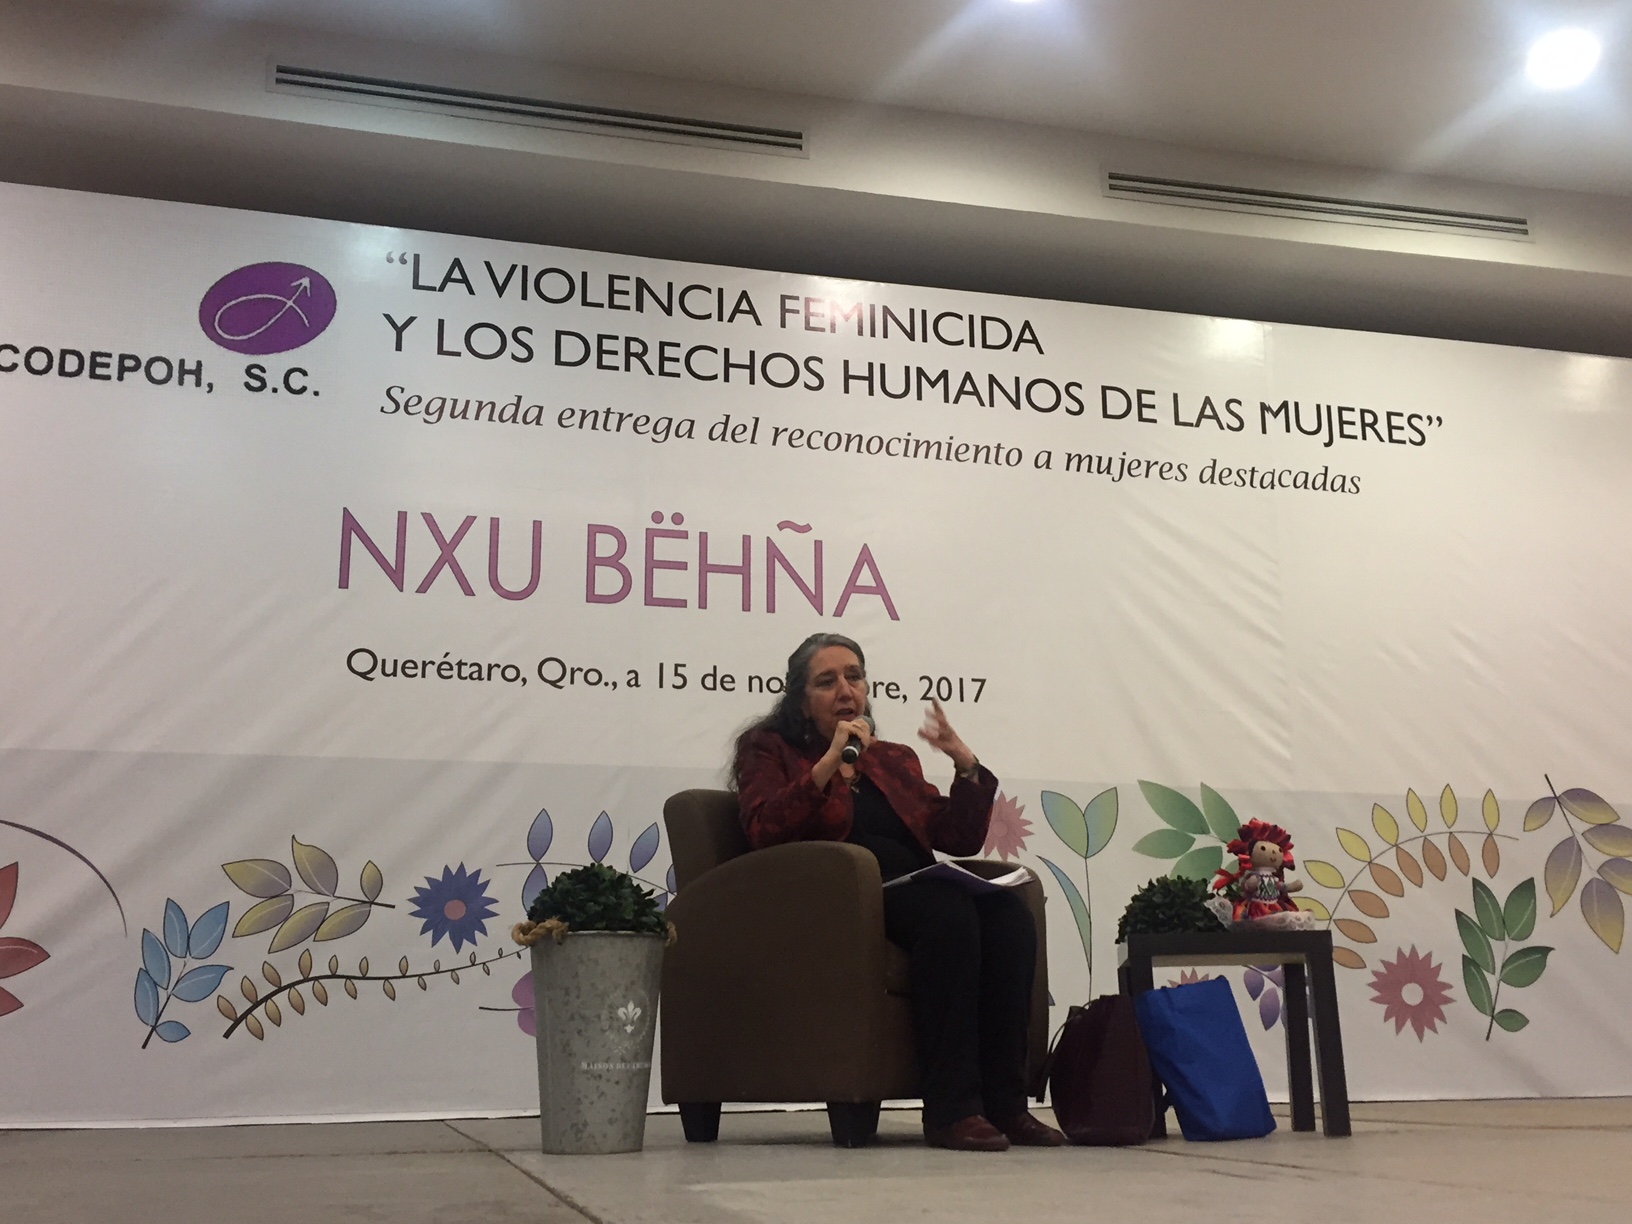  Llaman activistas a visibilizar la “violencia feminicida” en México